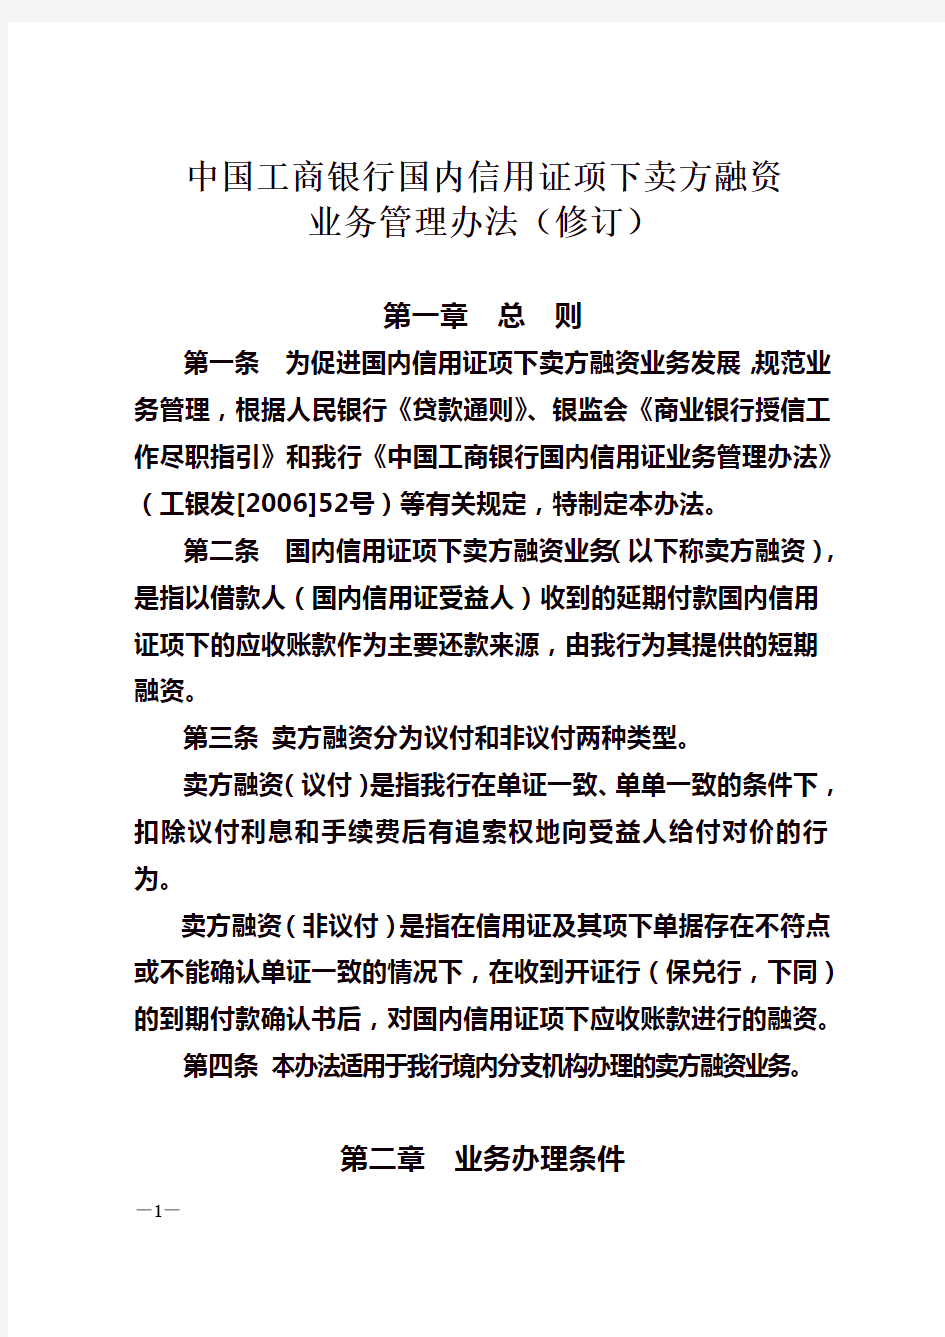 中国工商银行国内信用证项下卖方融资业务管理办法(DOC 39页)